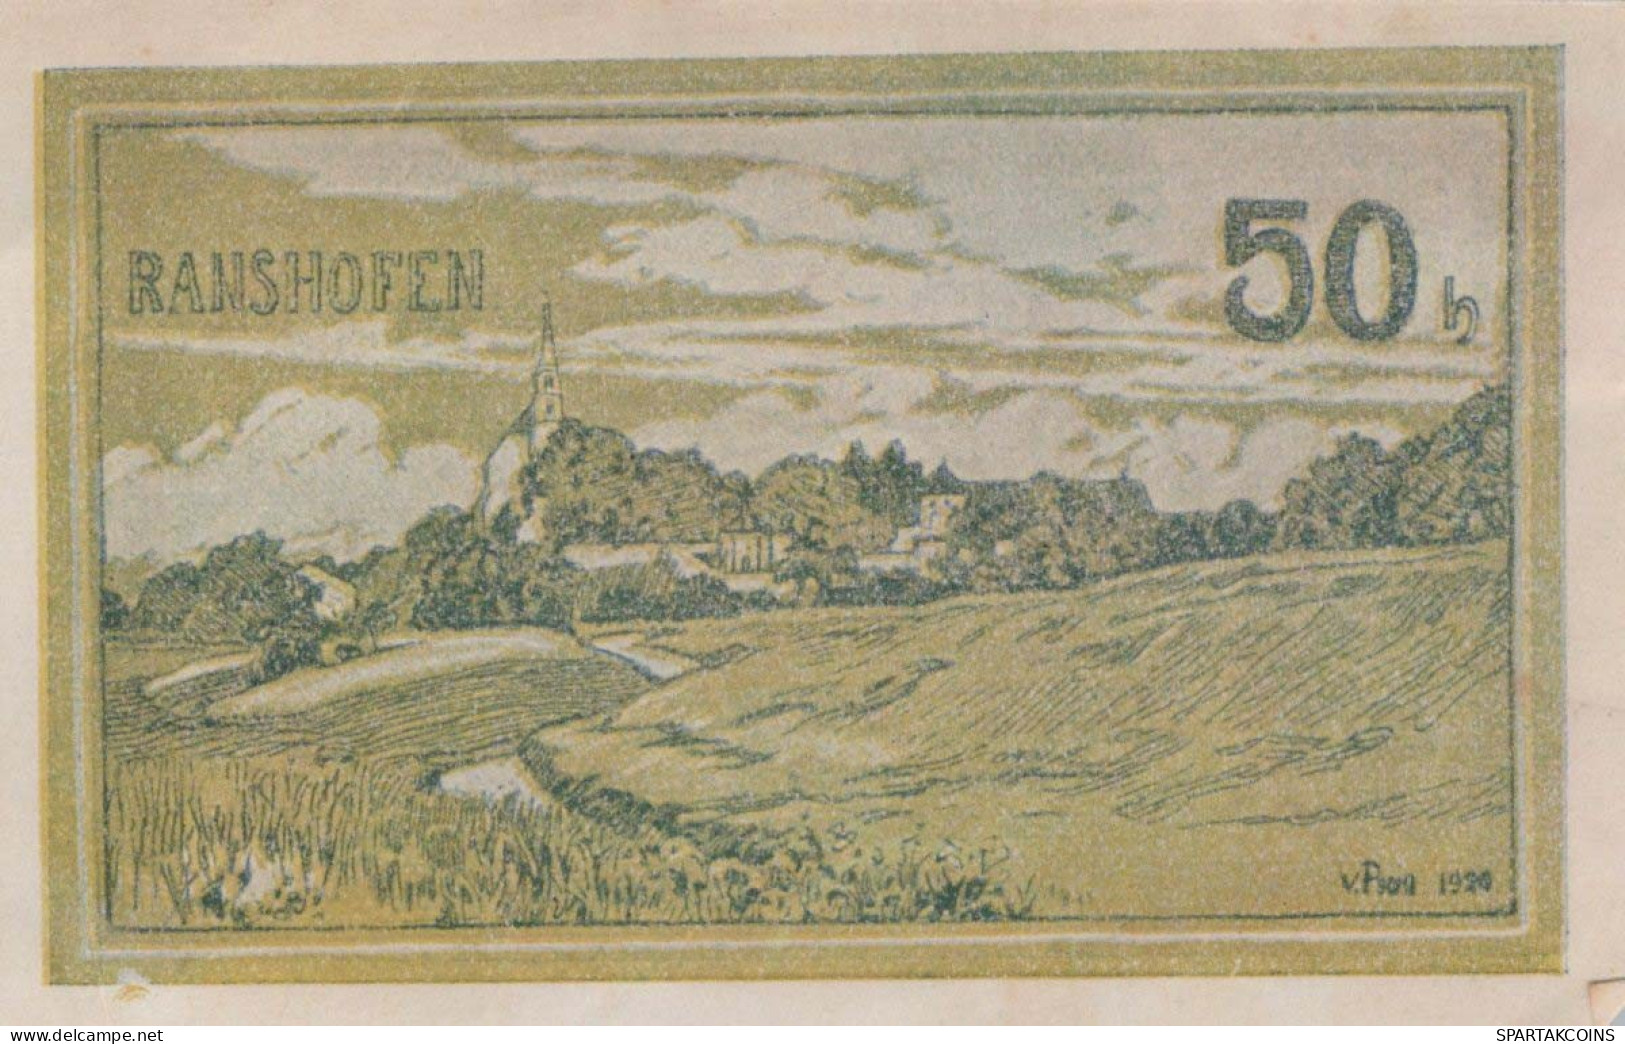 50 HELLER 1920 Stadt RANSHOFEN Oberösterreich Österreich Notgeld Banknote #PE524 - [11] Emisiones Locales